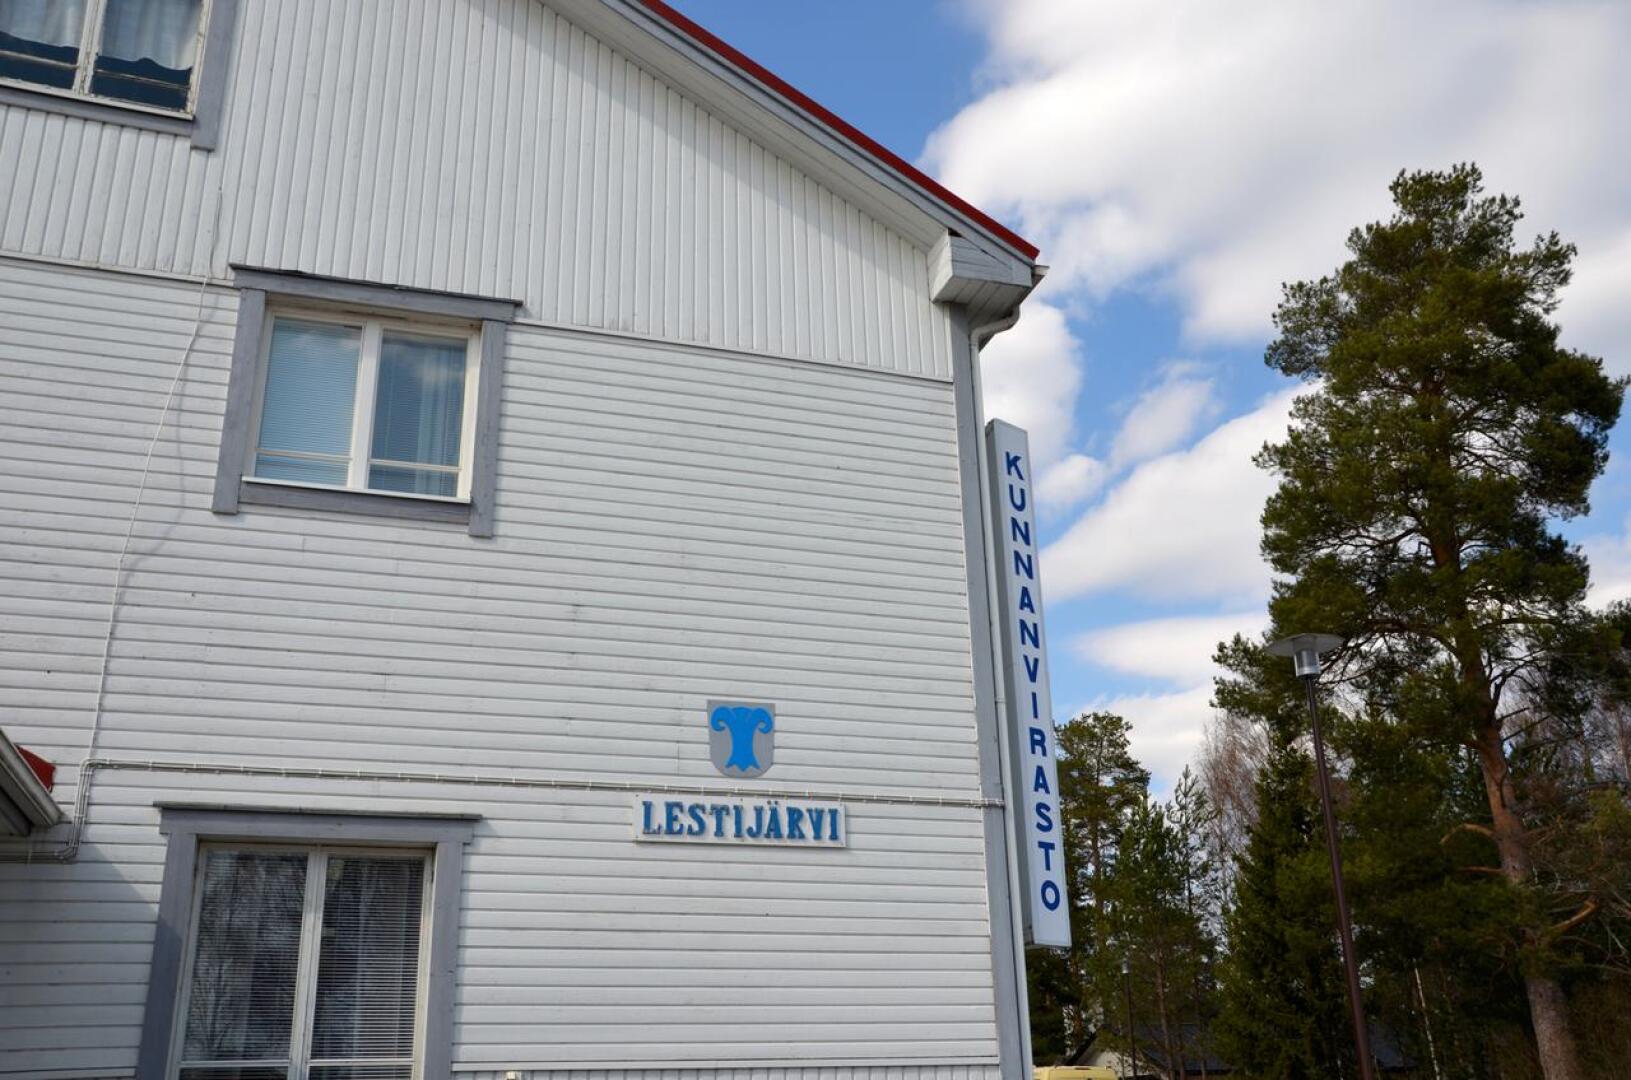 Voimakasta kritiikkiä. ”On käsittämätöntä, miten huonosti Lestijärven kunta on päätösprosessissa menetellyt”, kirjoittaja kritisoi.